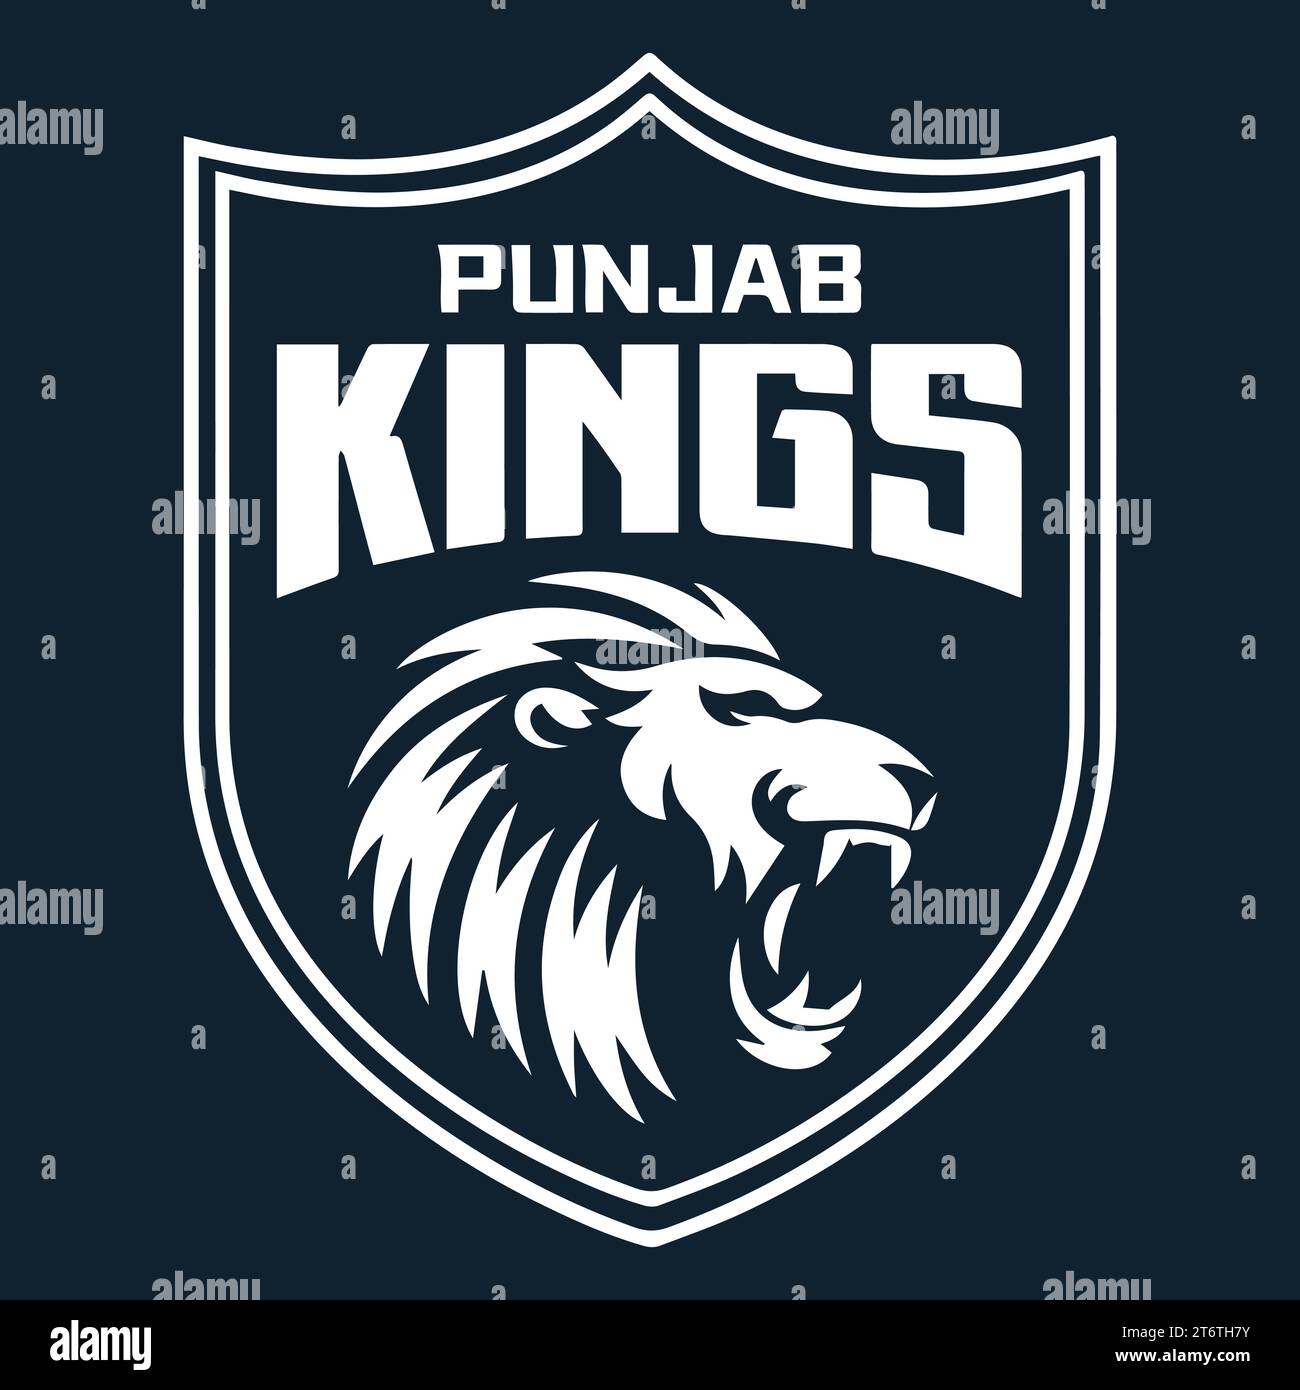 Punjab Kings logo White style Club de cricket professionnel indien, Illustration vectorielle Abstract image modifiable Illustration de Vecteur